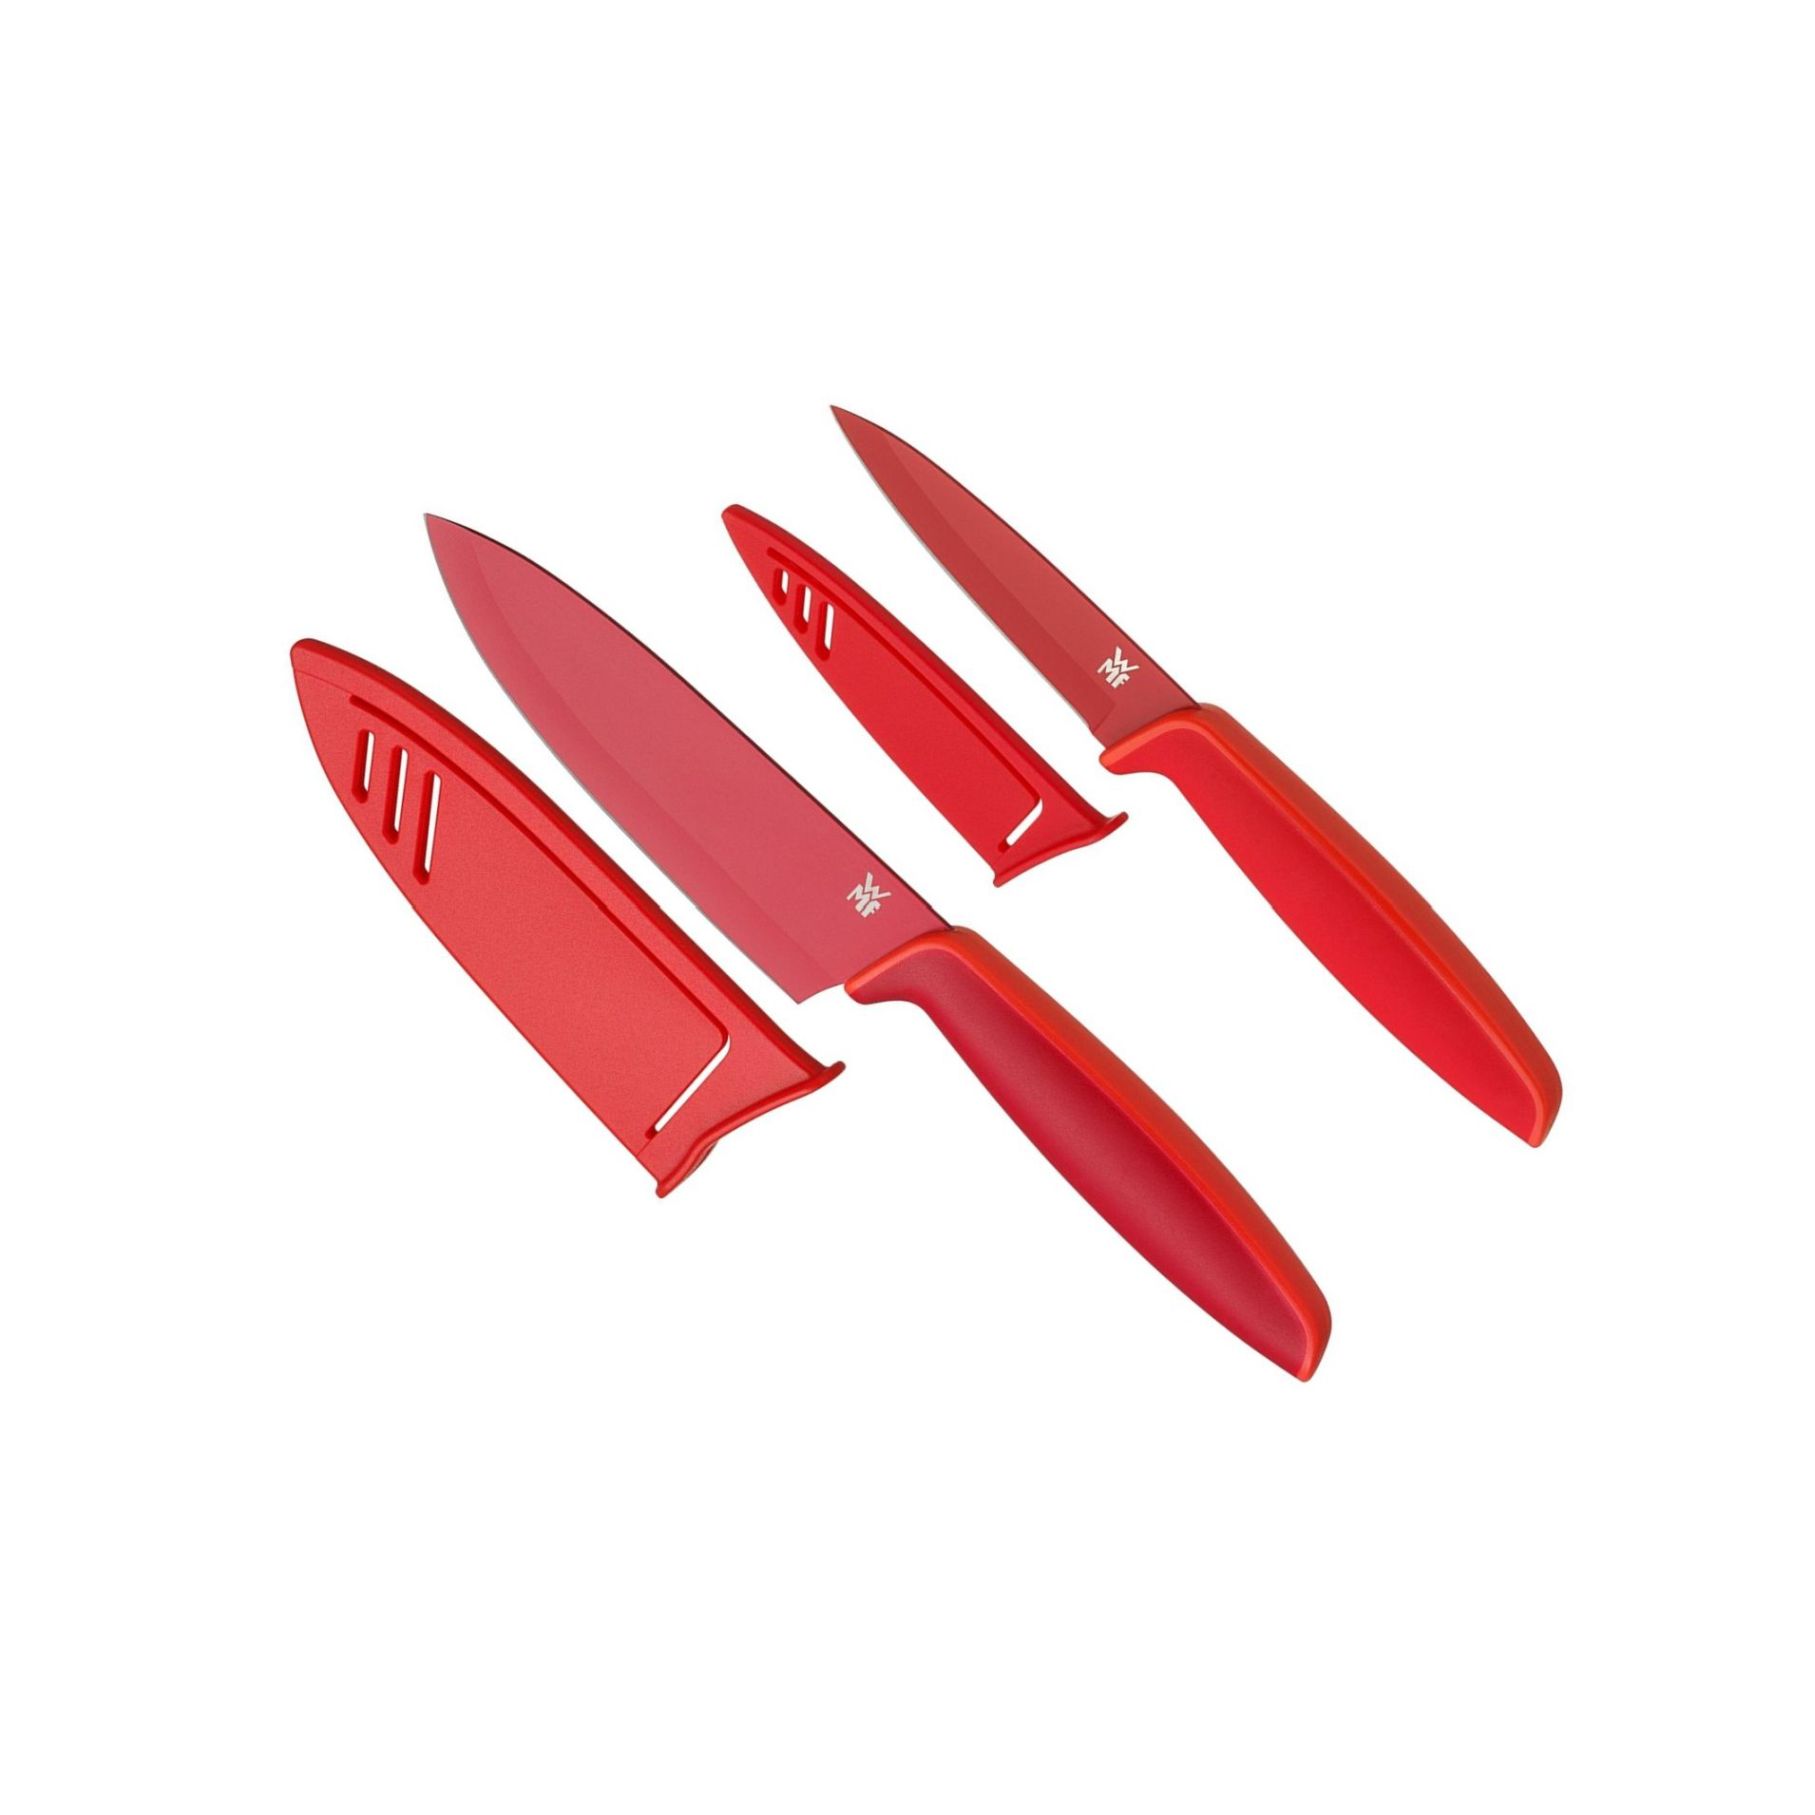 Set 2 ks kuchyňských nožů TOUCH, červený - WMF